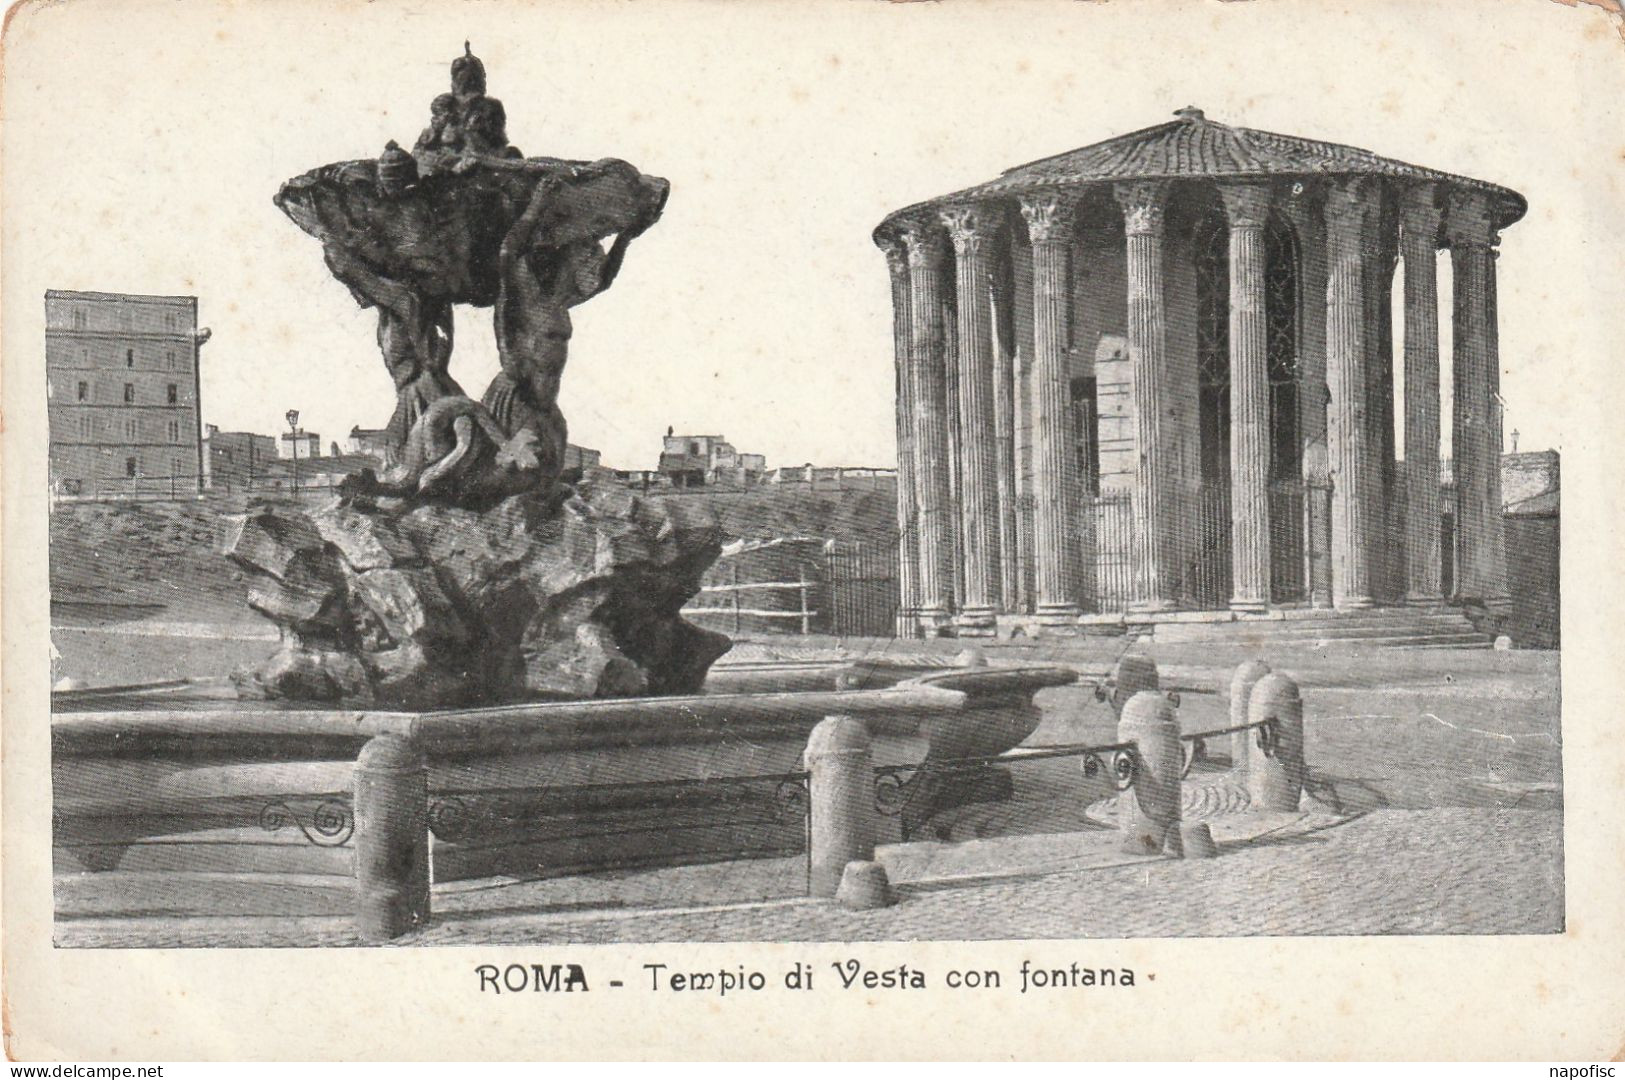 96-Roma Tempio Di Vesta Con Fontana - Andere Monumente & Gebäude